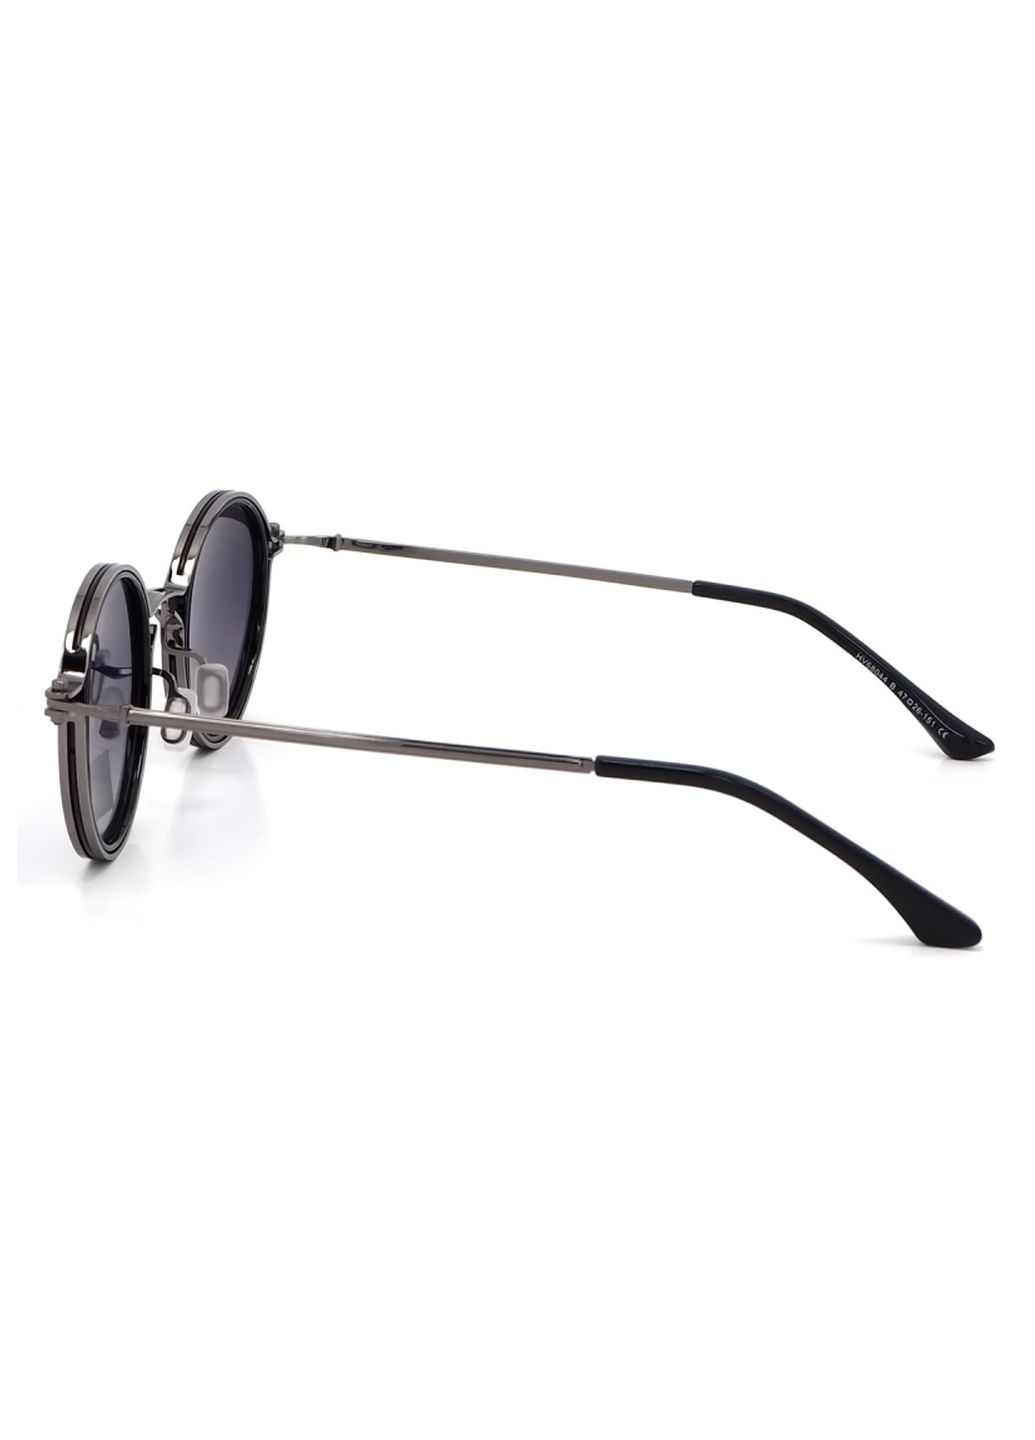 Купить Солнцезащитные очки c поляризацией HAVVS HV68044 170007 - Черный в интернет-магазине